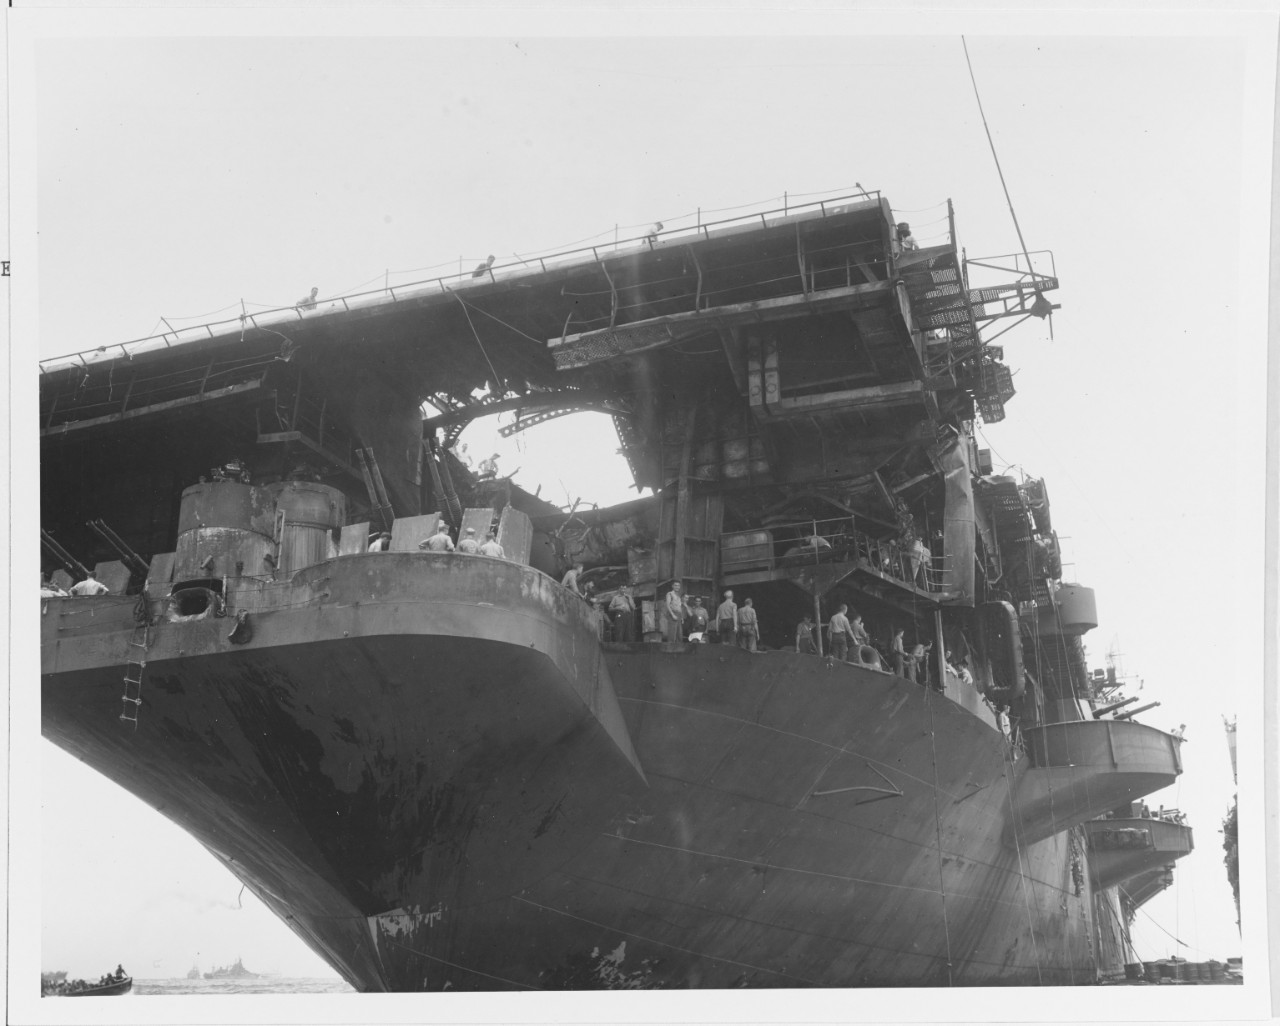 USS RANDOLPH (CV-15)